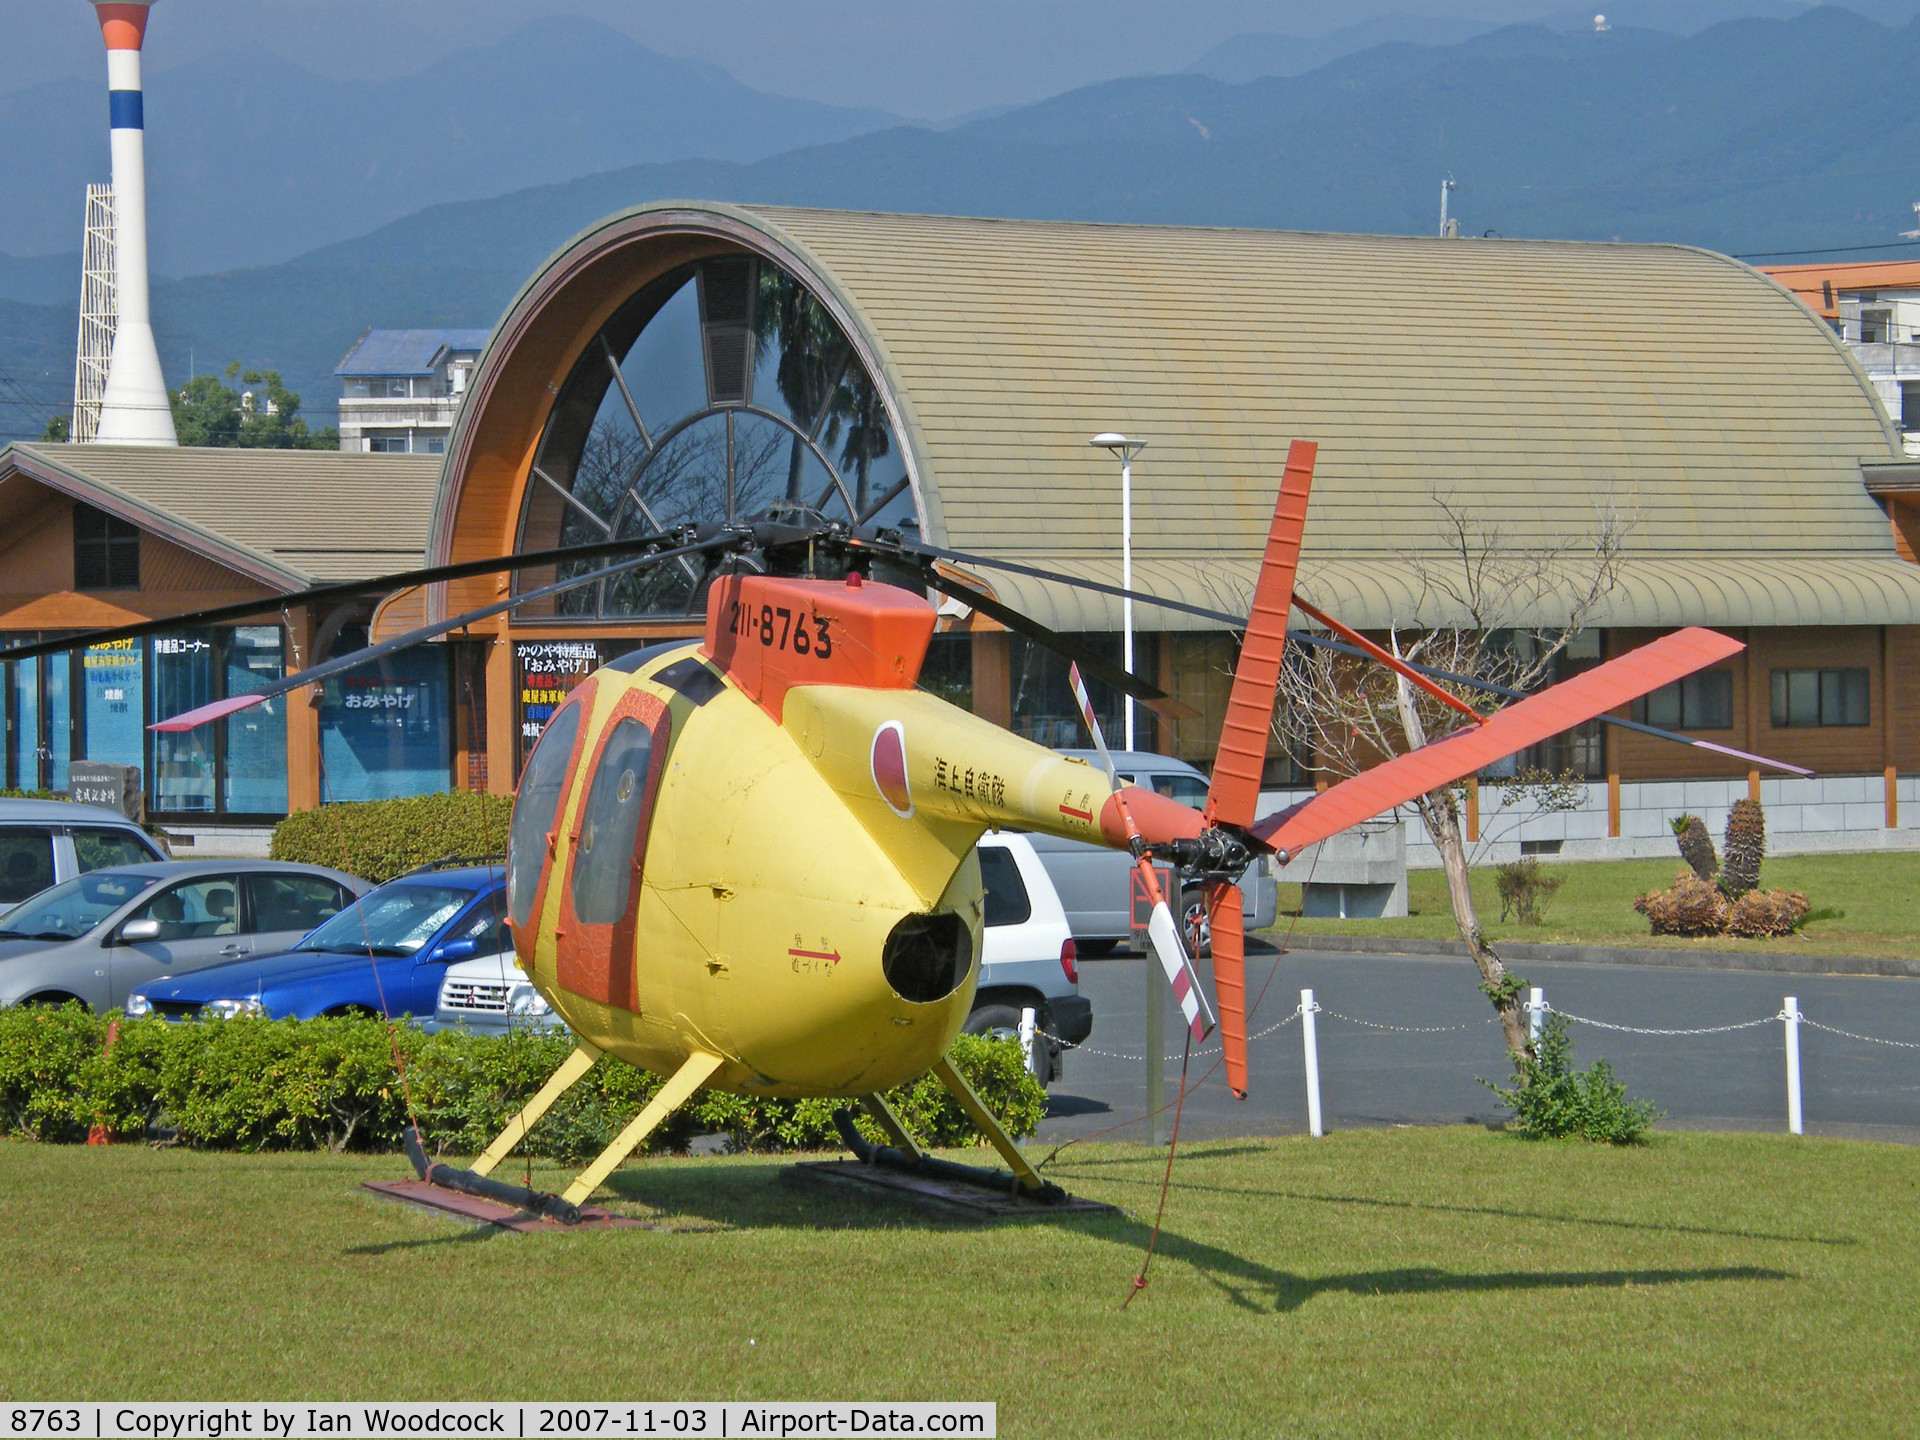 8763, Hughes (Kawasaki) OH-6J (369HM) C/N 6363, Kawasaki OH-6J/JMSDF Museum,Kanoya